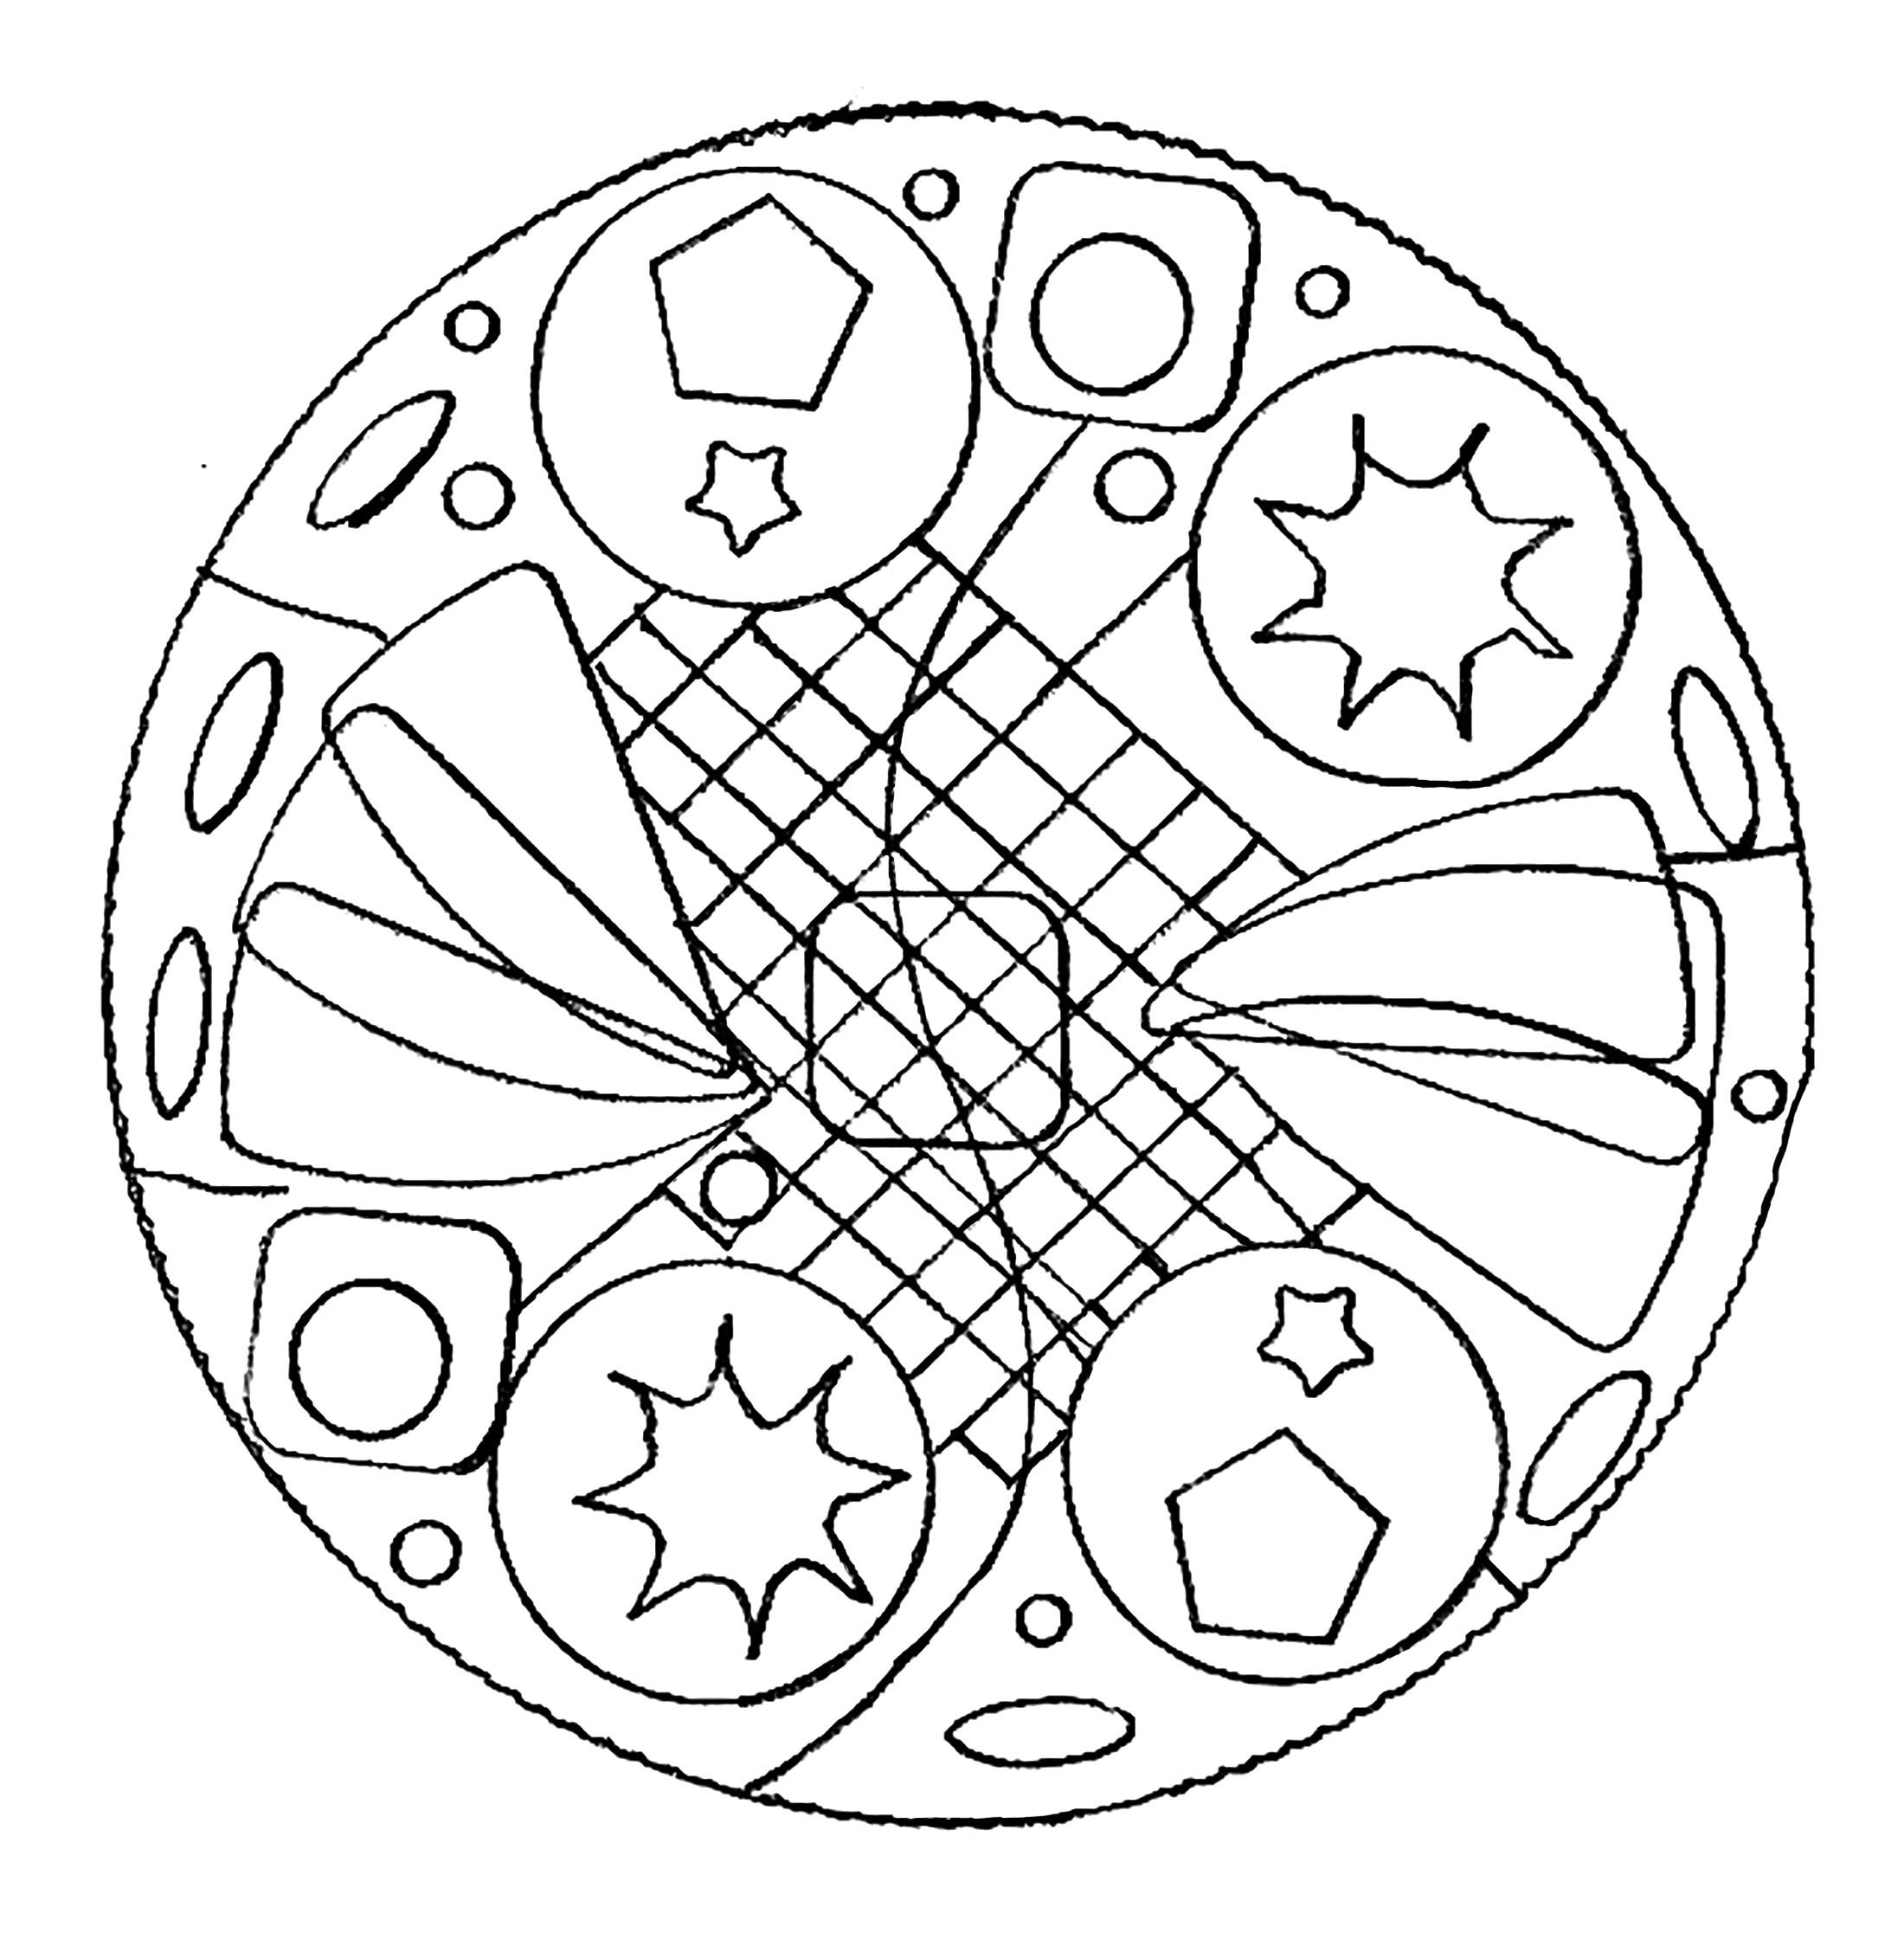 Un Mandala parfait si vous avez envie de simplicité ou que vous disposez de peu de temps pour colorier.